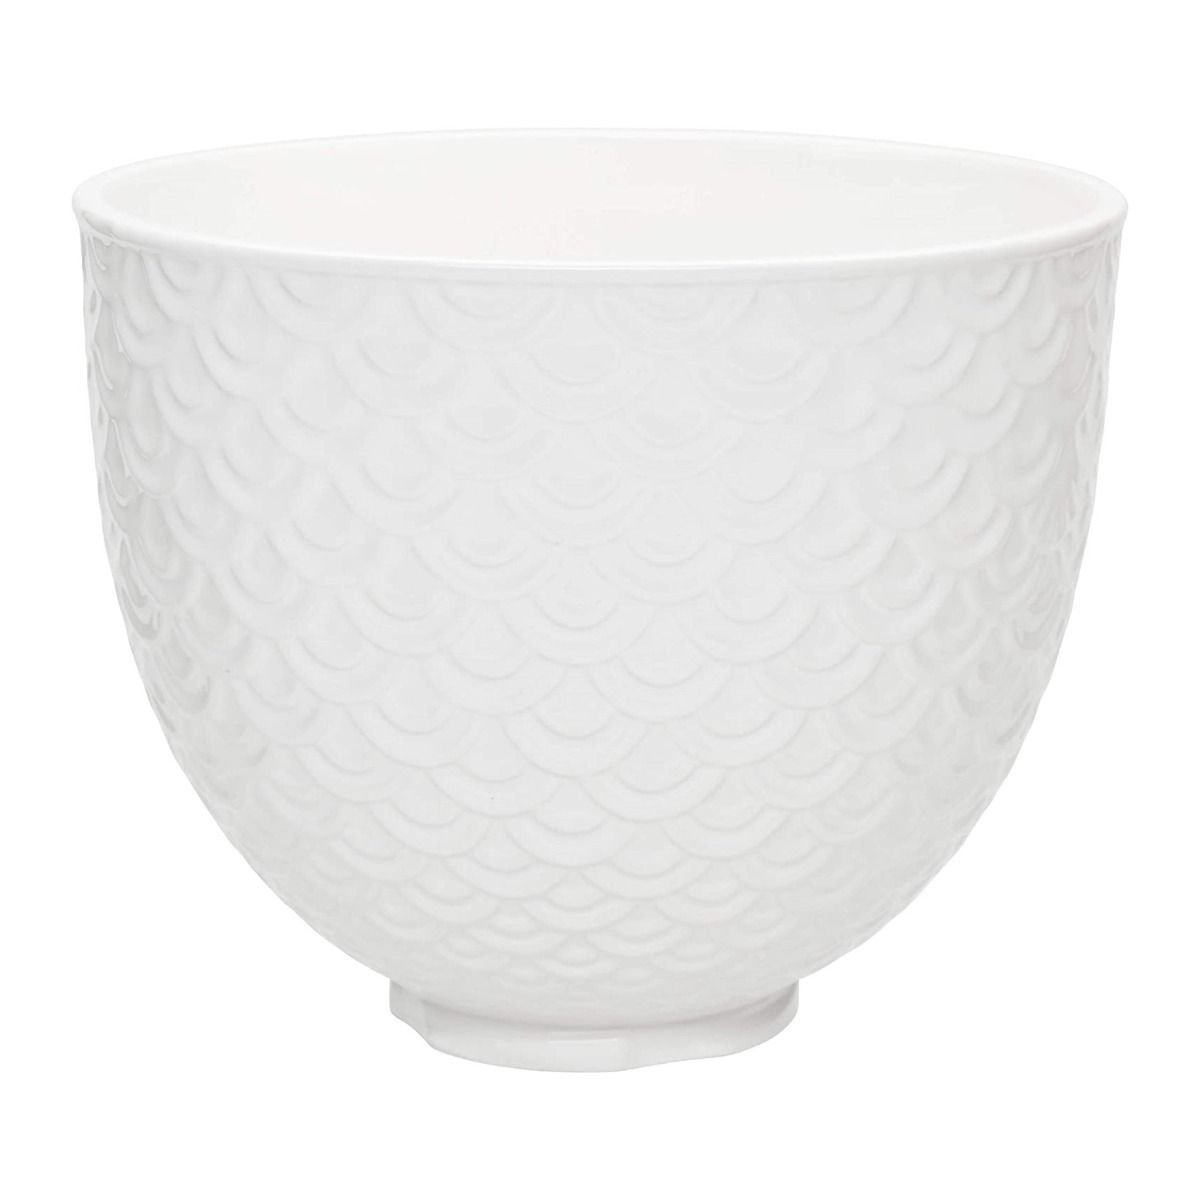 5 Quart Textured Ceramic Bowl